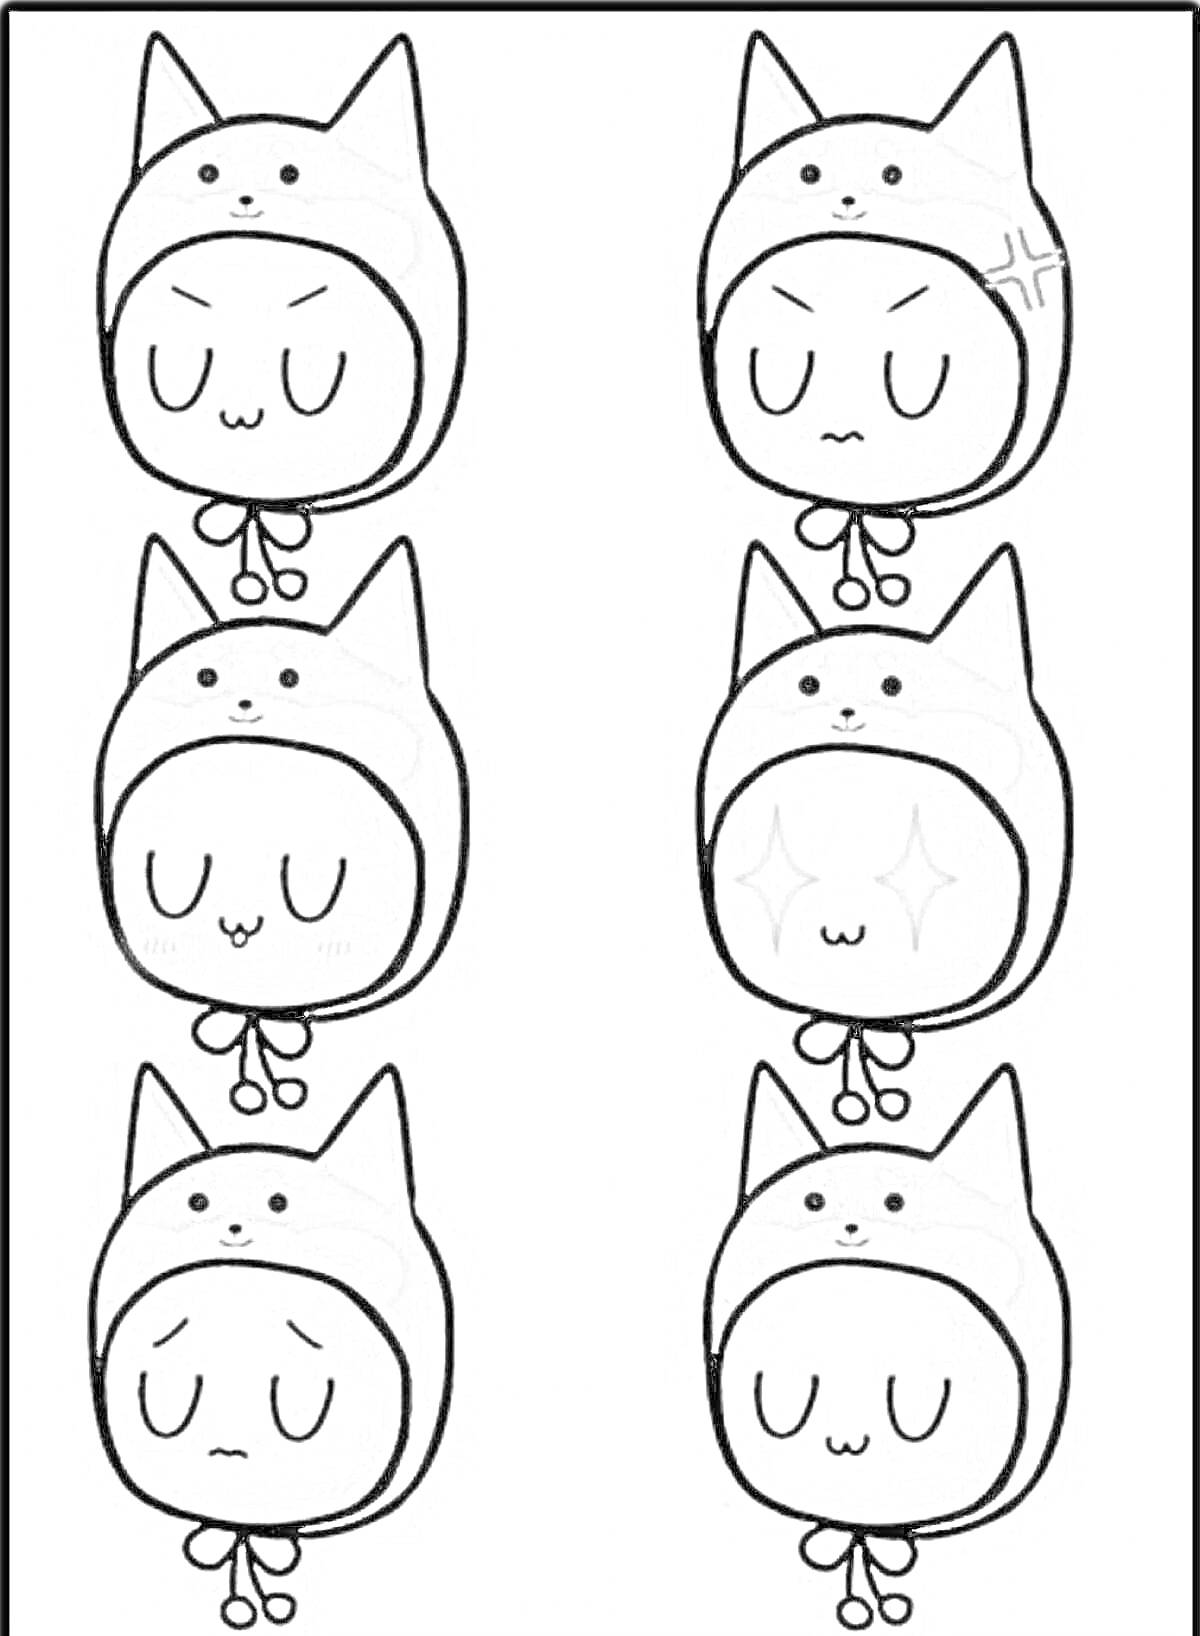 Раскраска Улей ютуберы - разнообразные эмоции котенка-маскота